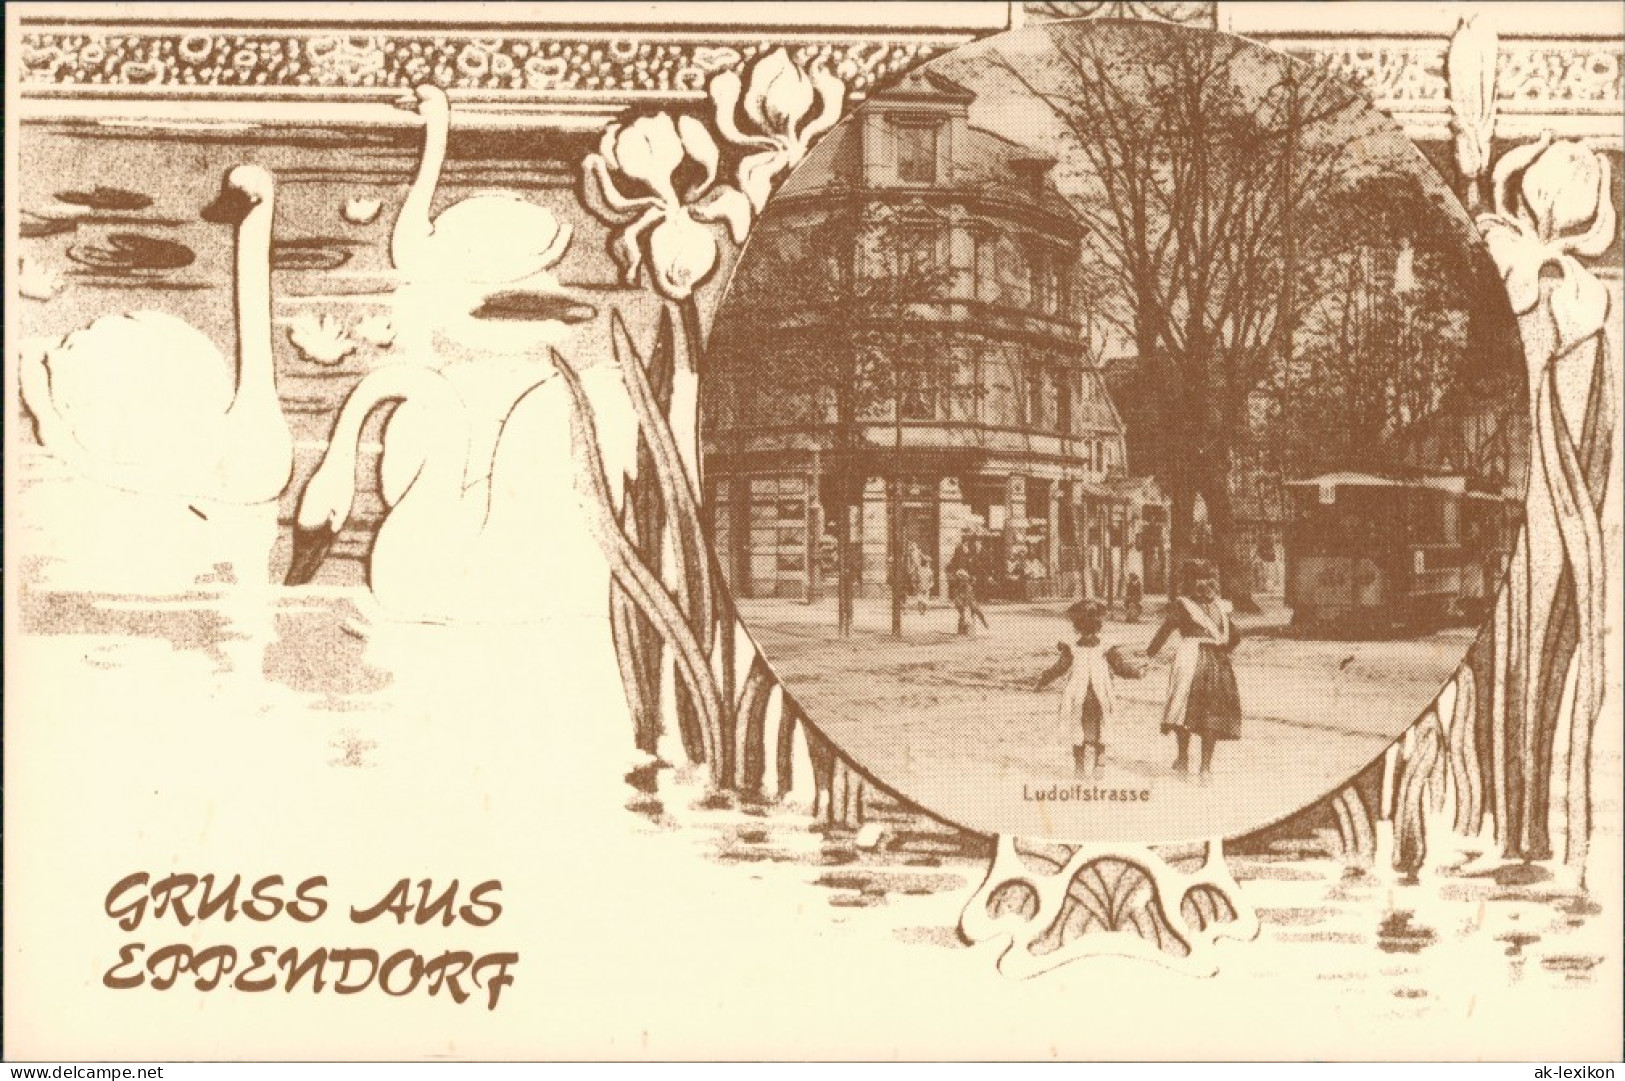 Eppendorf-Hamburg Reprint Einer Alten Gruss-Aus-AK Mit Ludolfstrasse 1989/1990 - Eppendorf